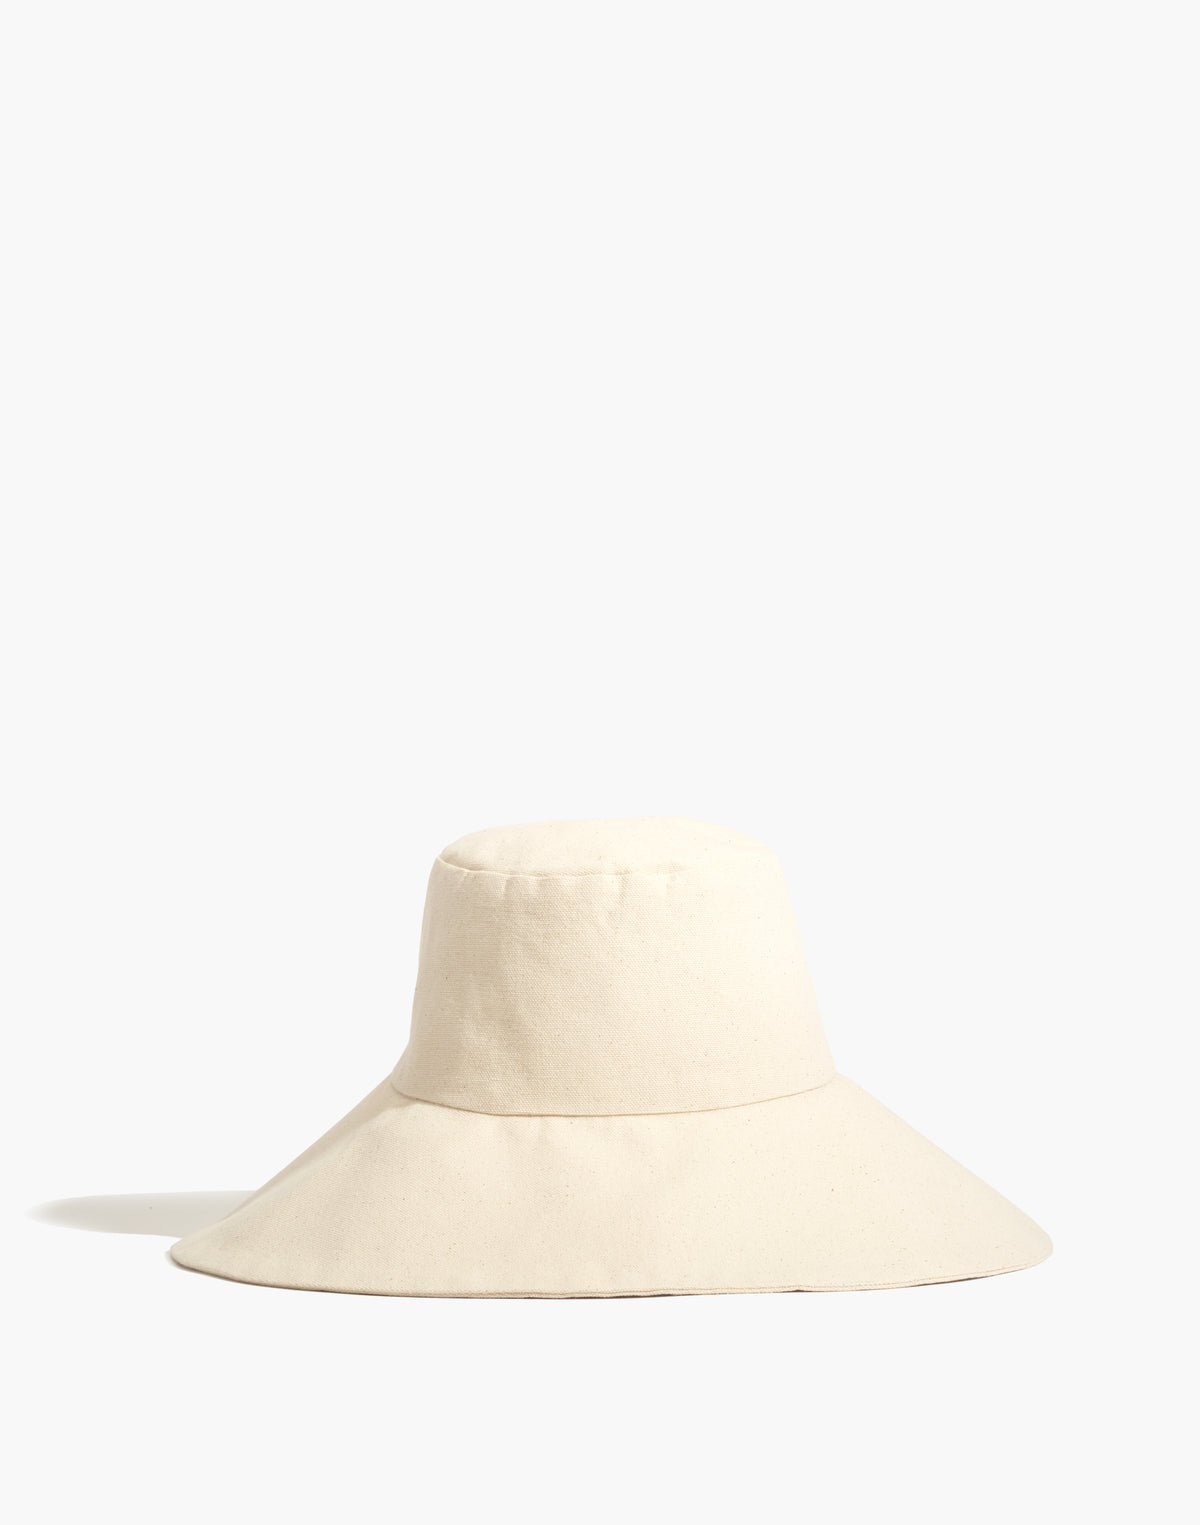 Canvas Hat | Wide Brim S/M 23 / 58.5cm